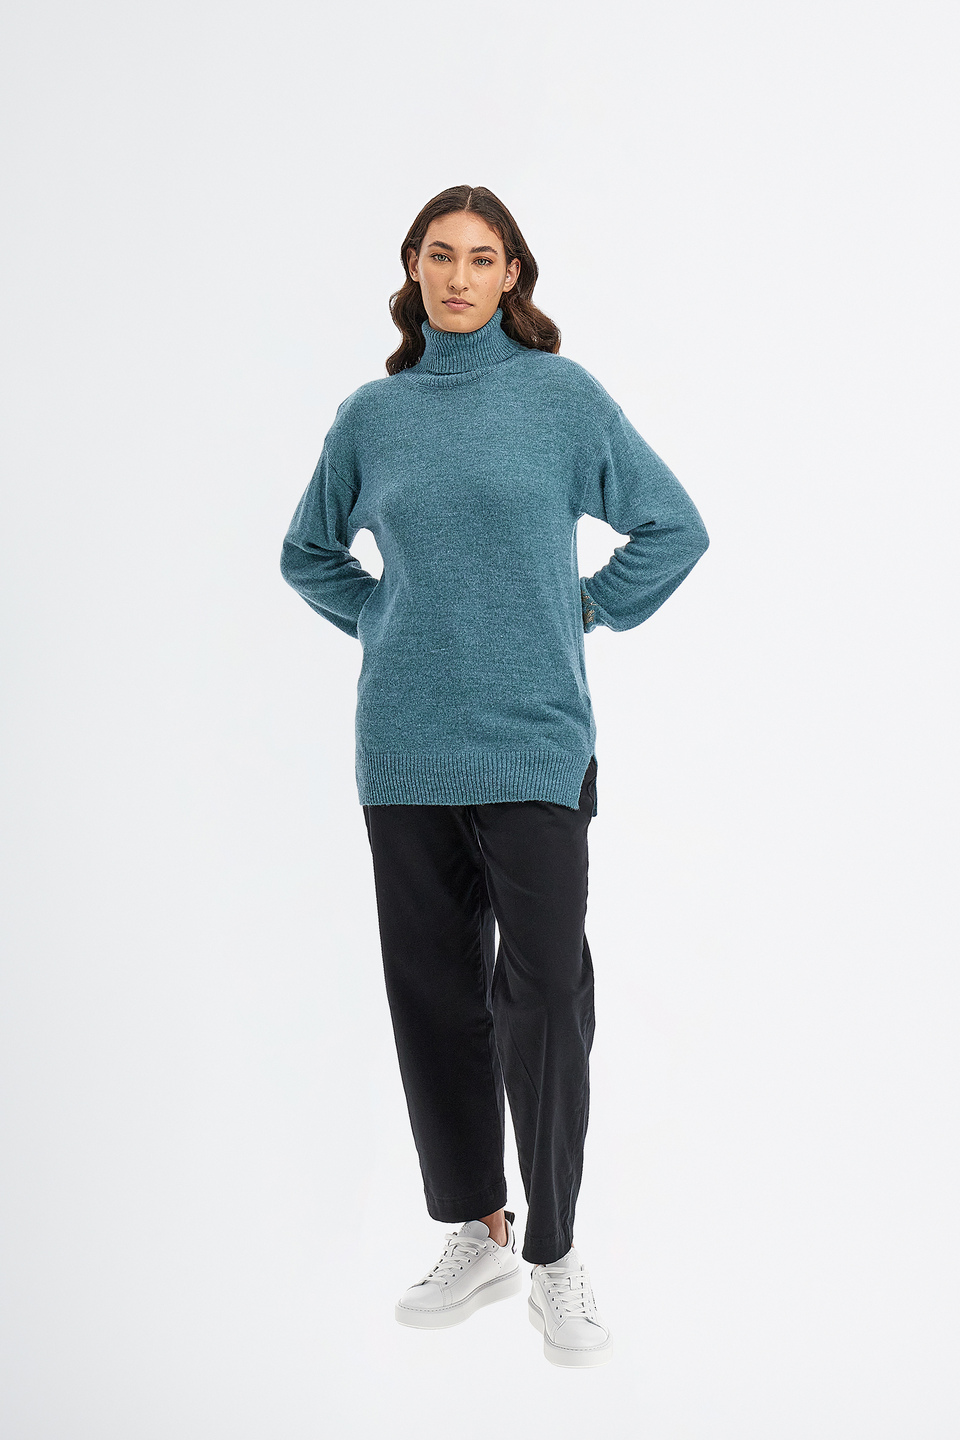 Damen Pullover mit hohem Kragen aus Alpaka mit regulärer Passform | La Martina - Official Online Shop